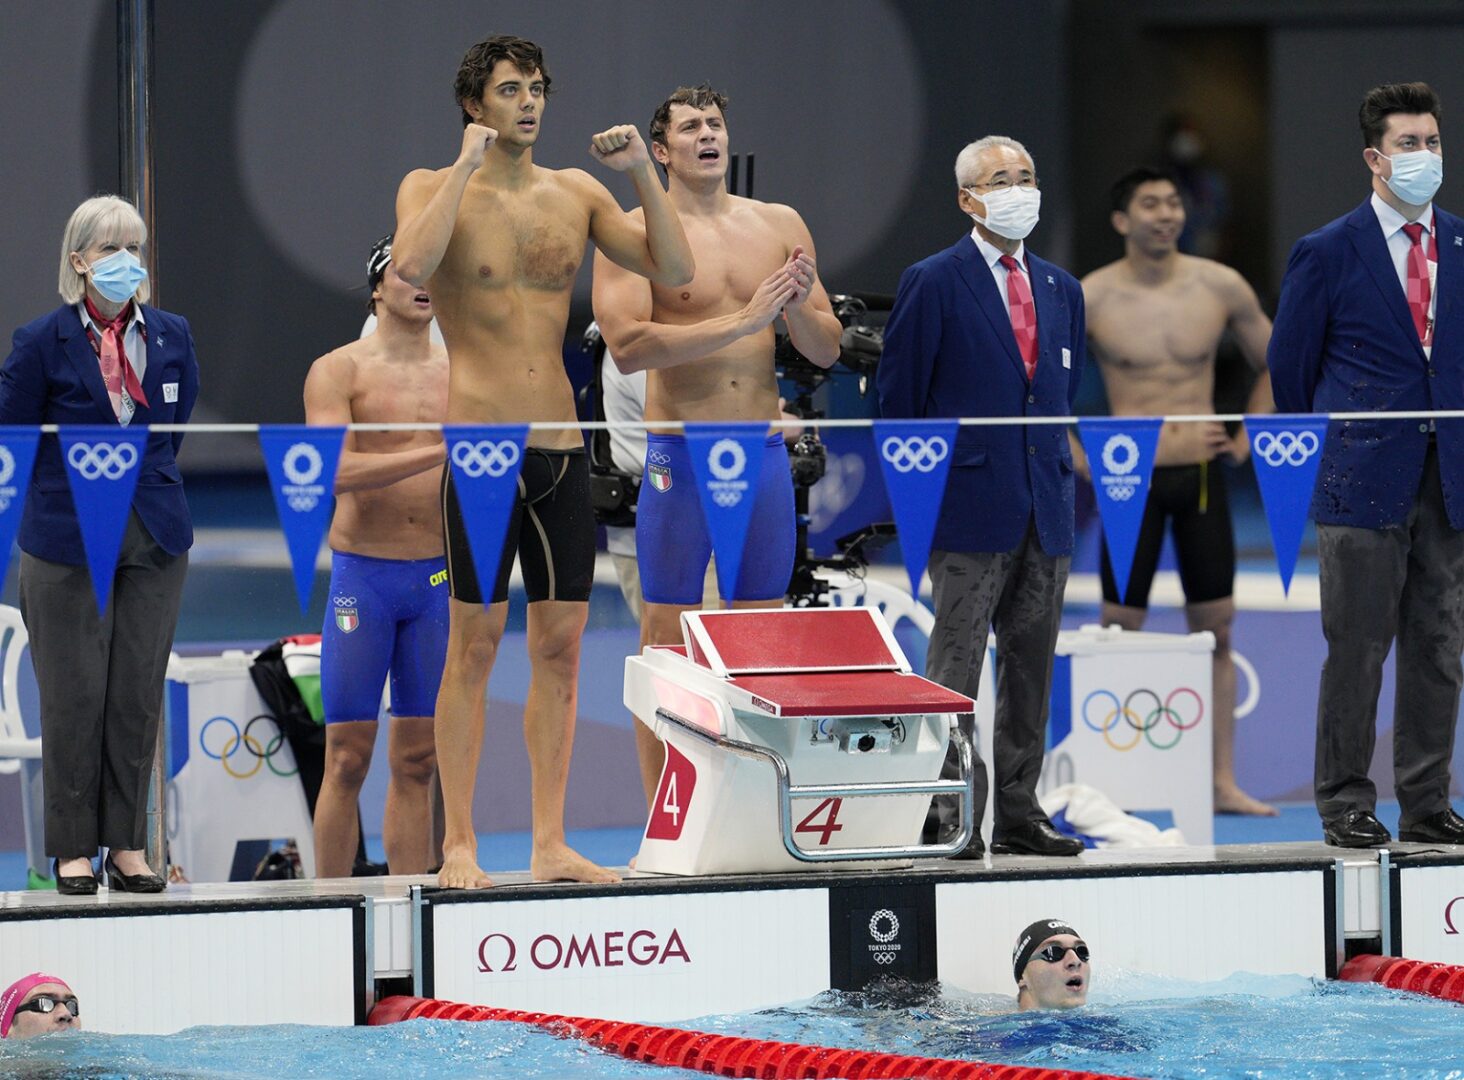 Nuoto, bronzo Italia nella 4×100 mista uomini